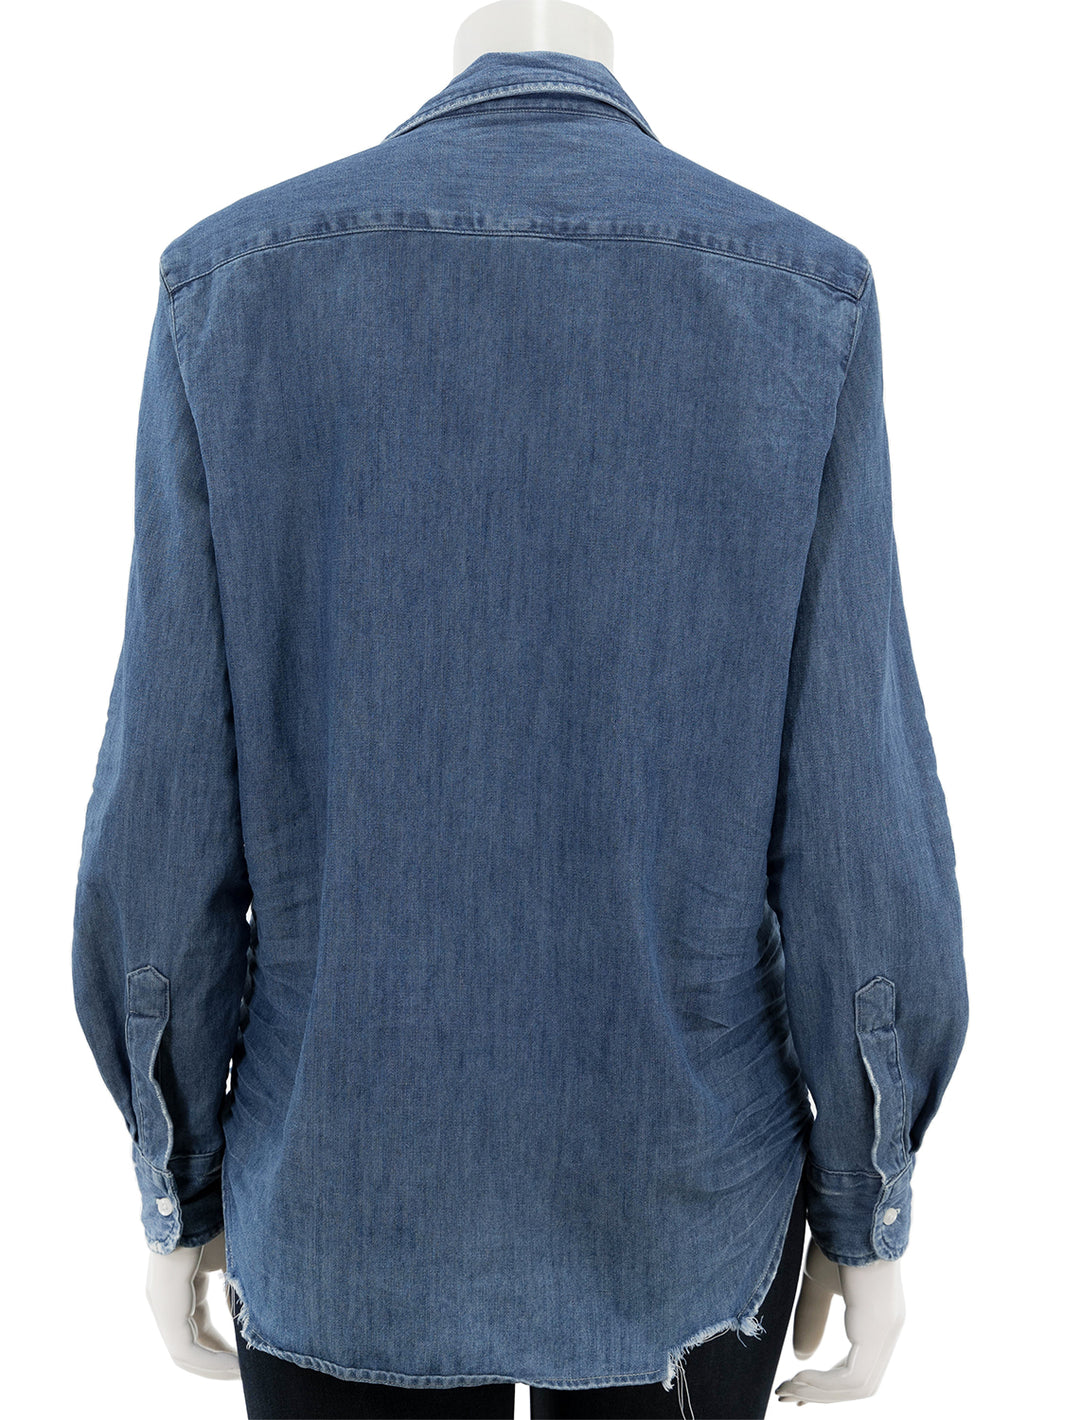 Back view of Frank & Eileen's eileen shirt in vintage stonewashed indigo.